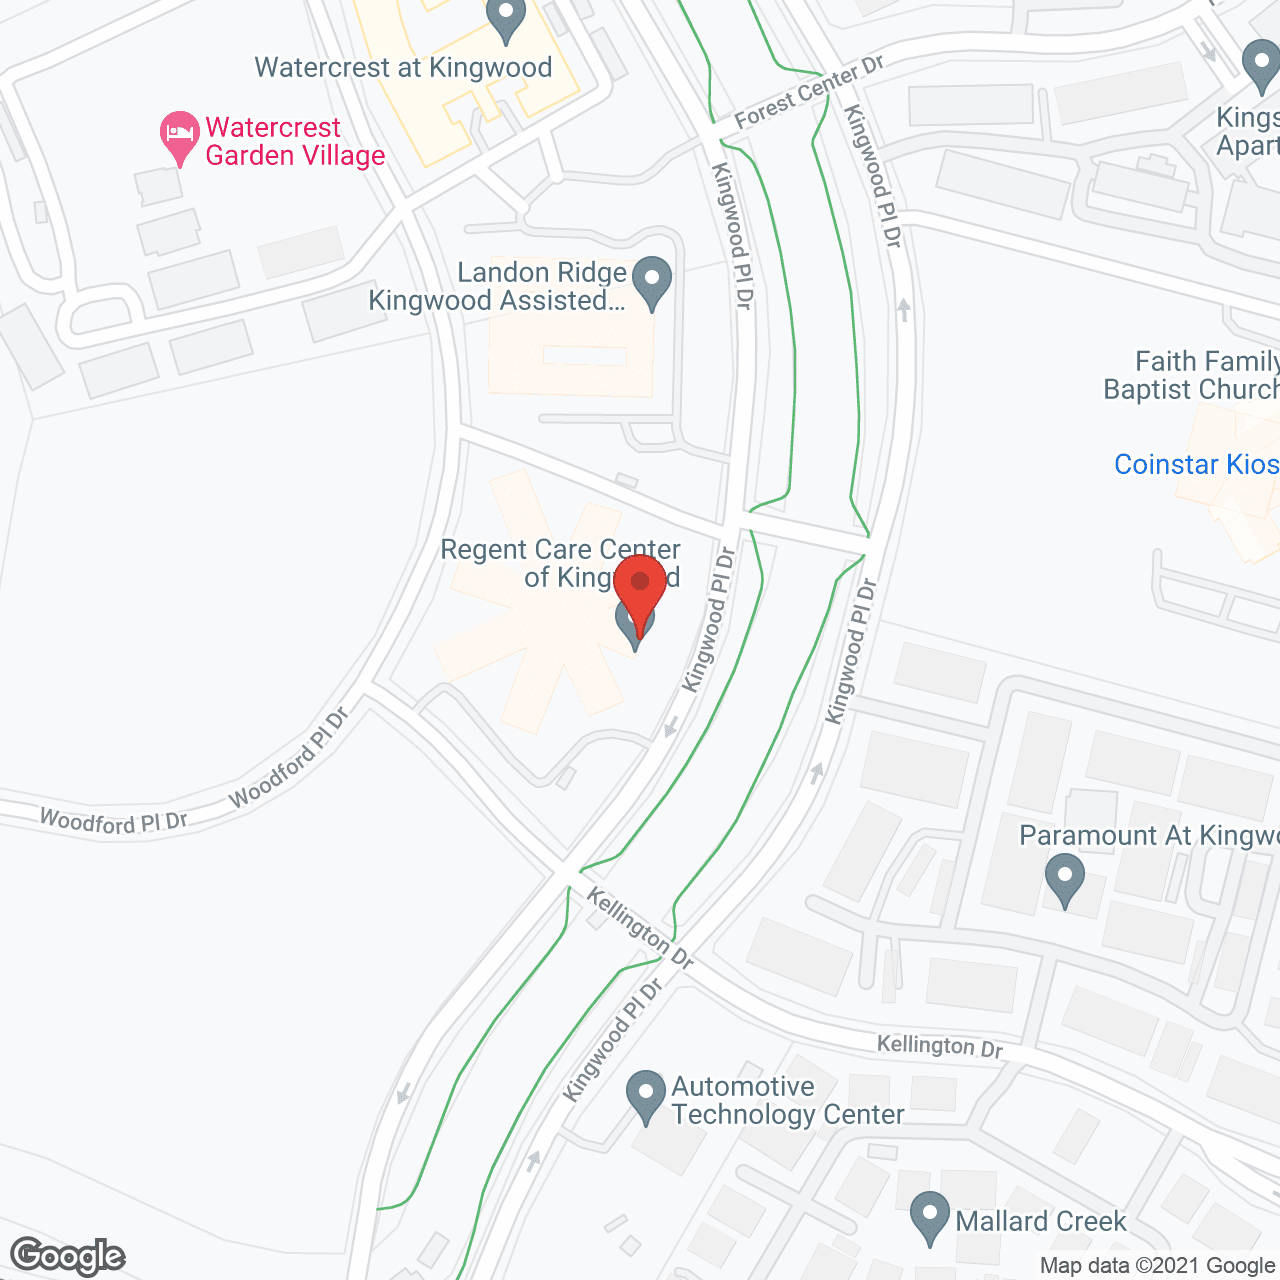 Regent Care Center of Kingwood in google map